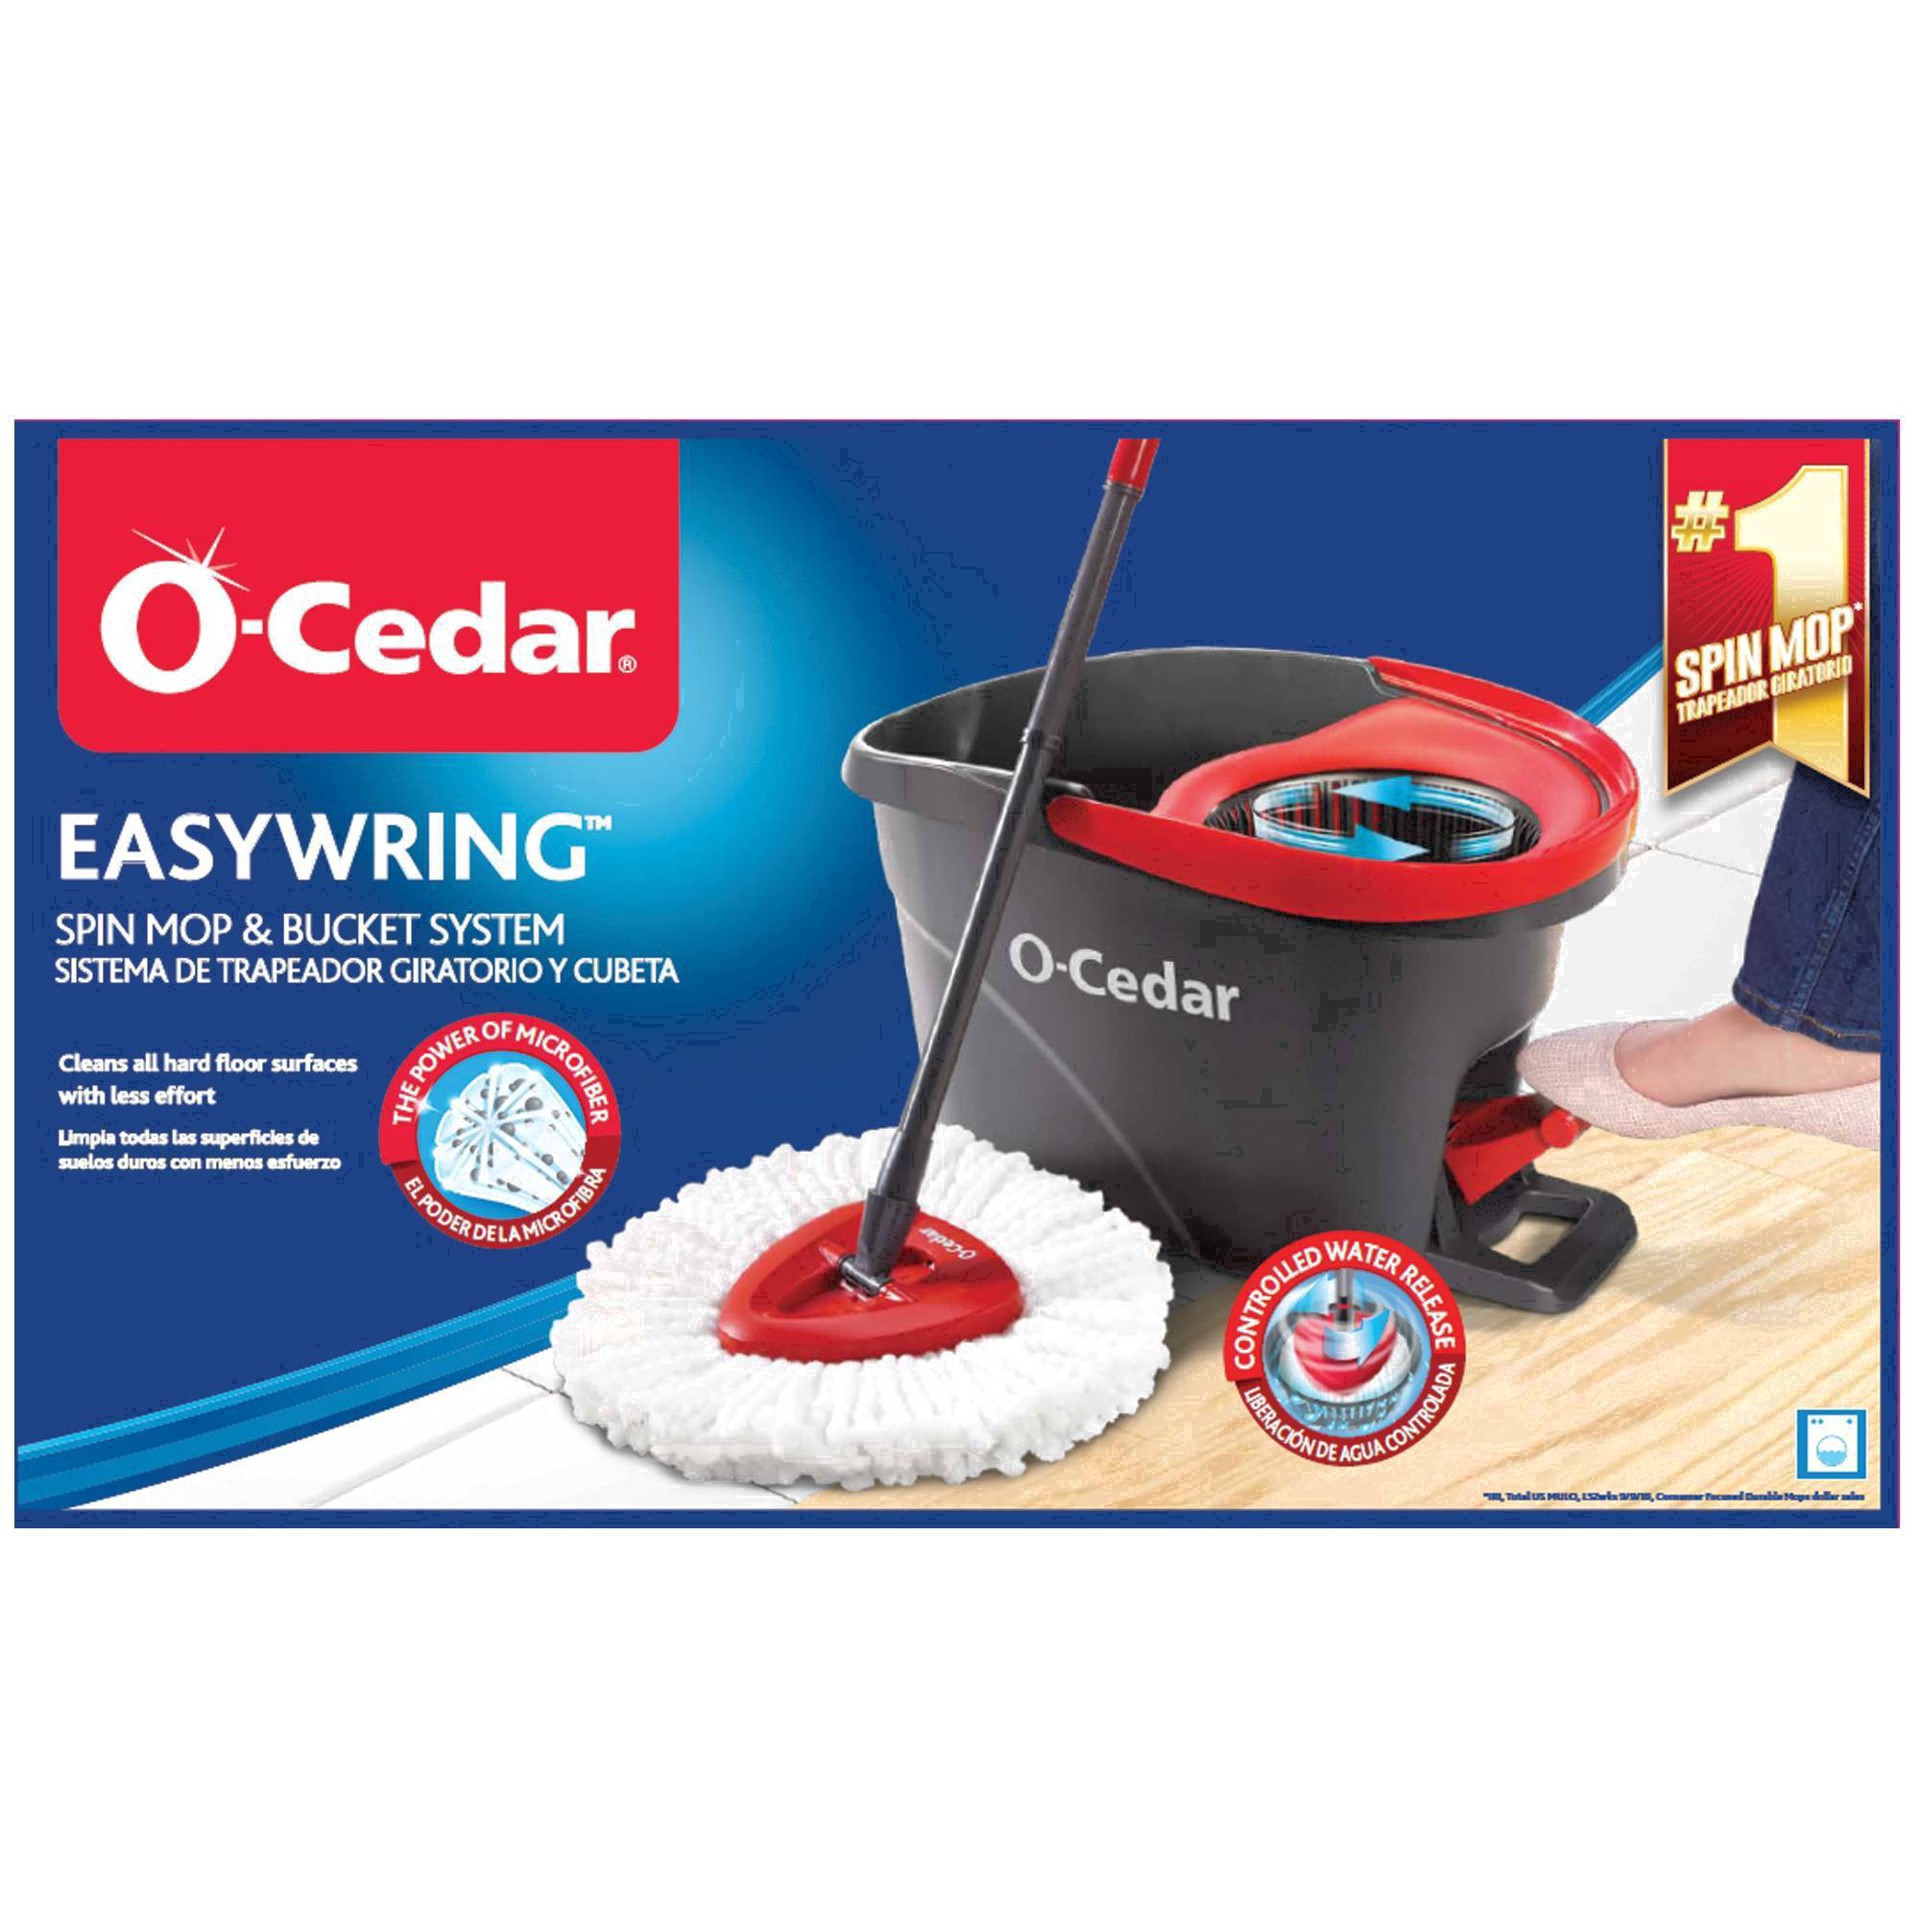 slide 25 of 151, O-Cedar Easywring Microfiber Spin Mop & Bucket System 1 ea, 1 ct